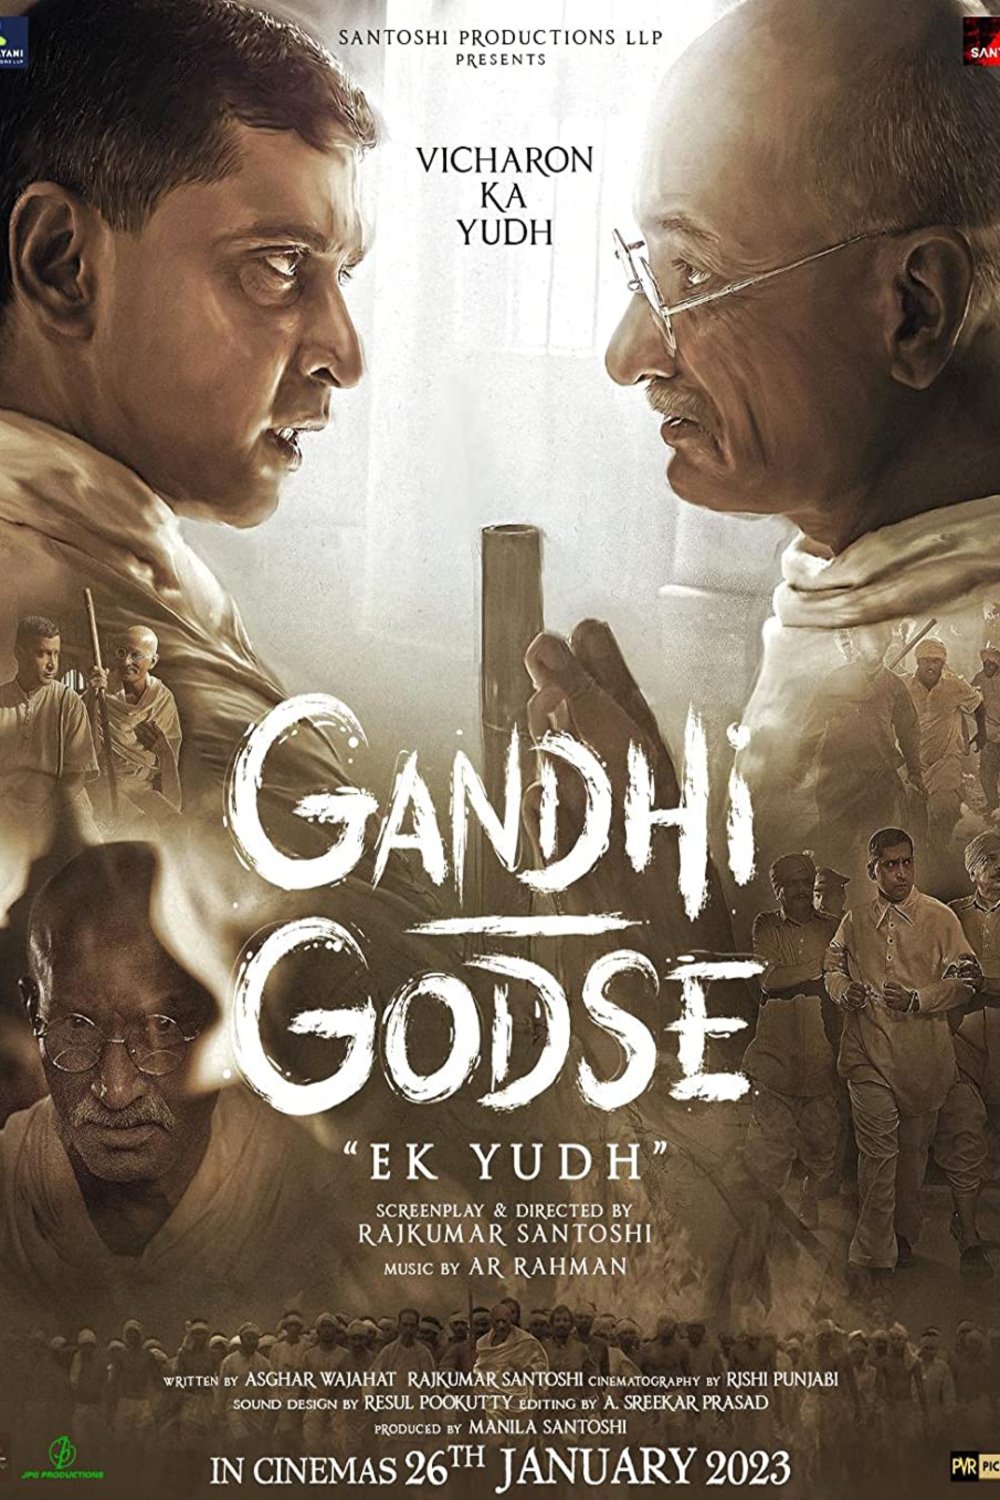 L'affiche originale du film Gandhi Godse Ek Yudh en Hindi